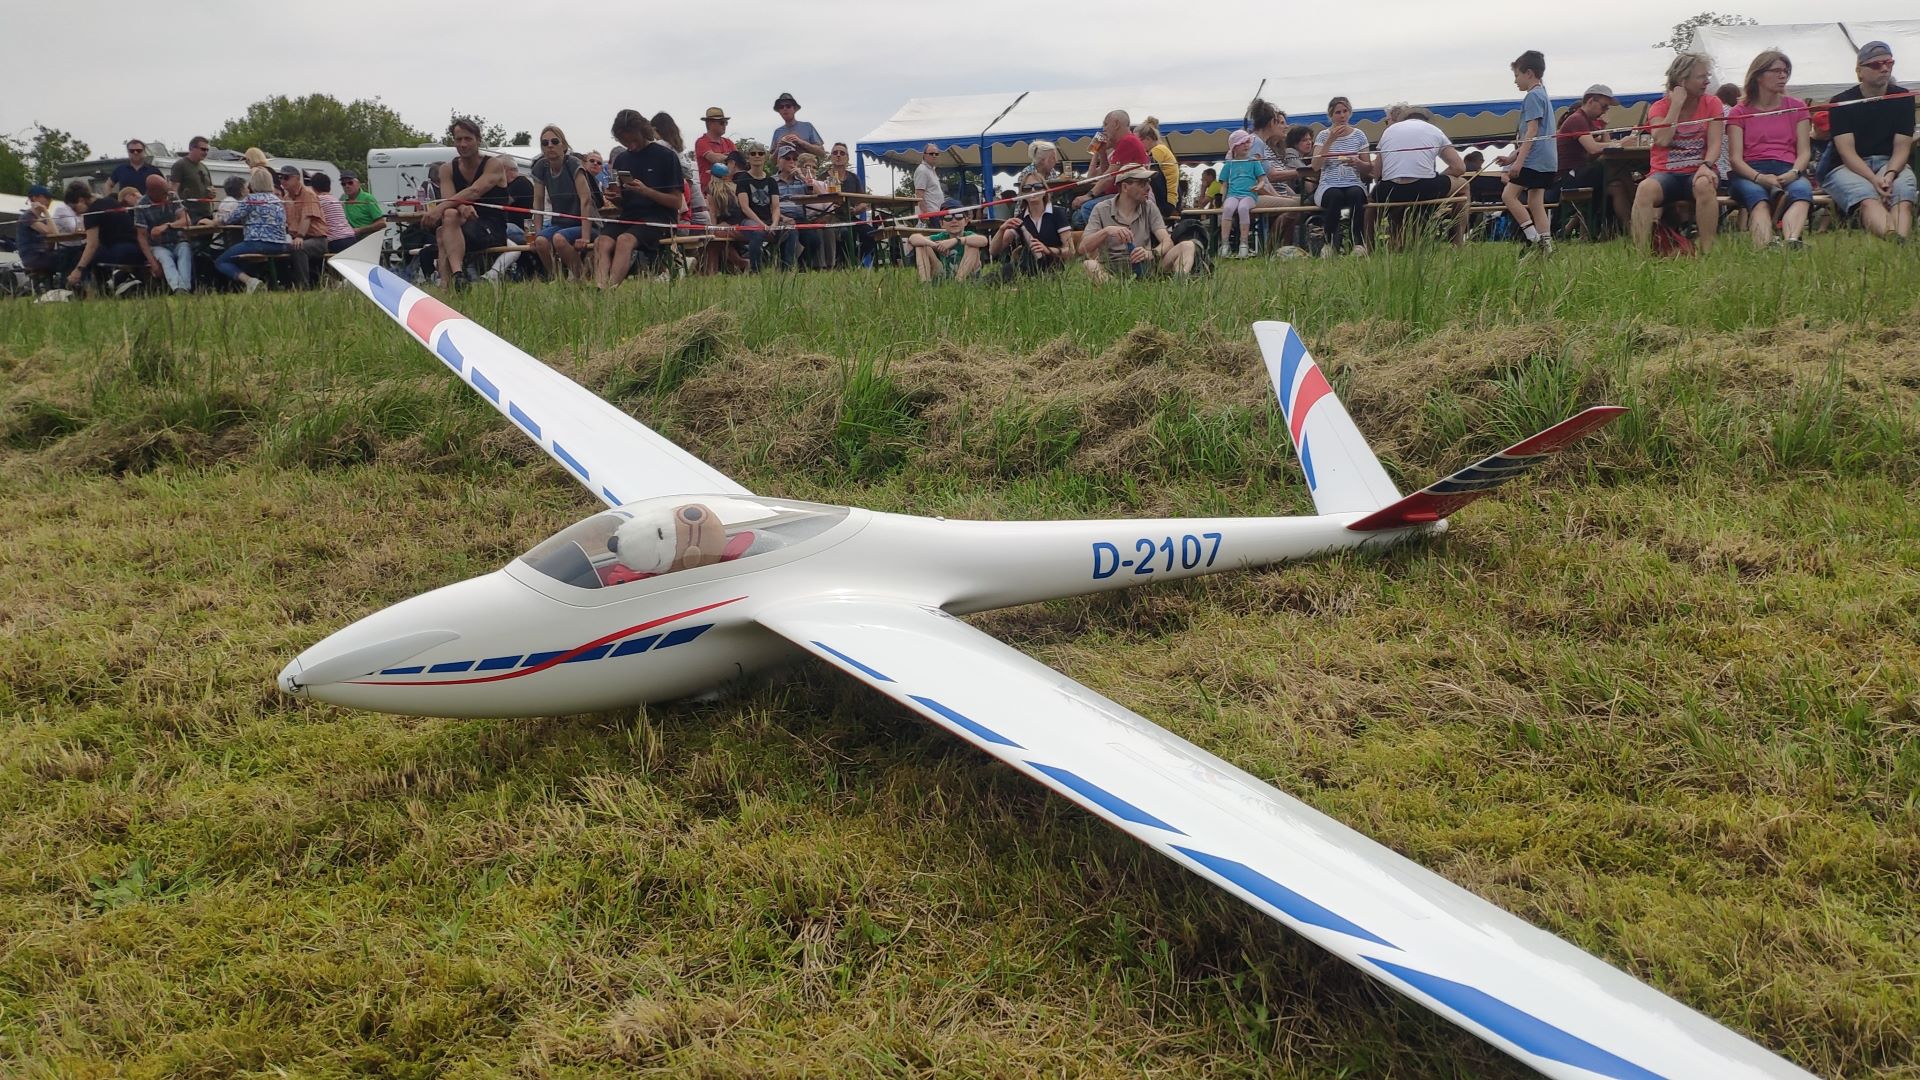 Modellsegelflugzeug im Gras vor Publikum